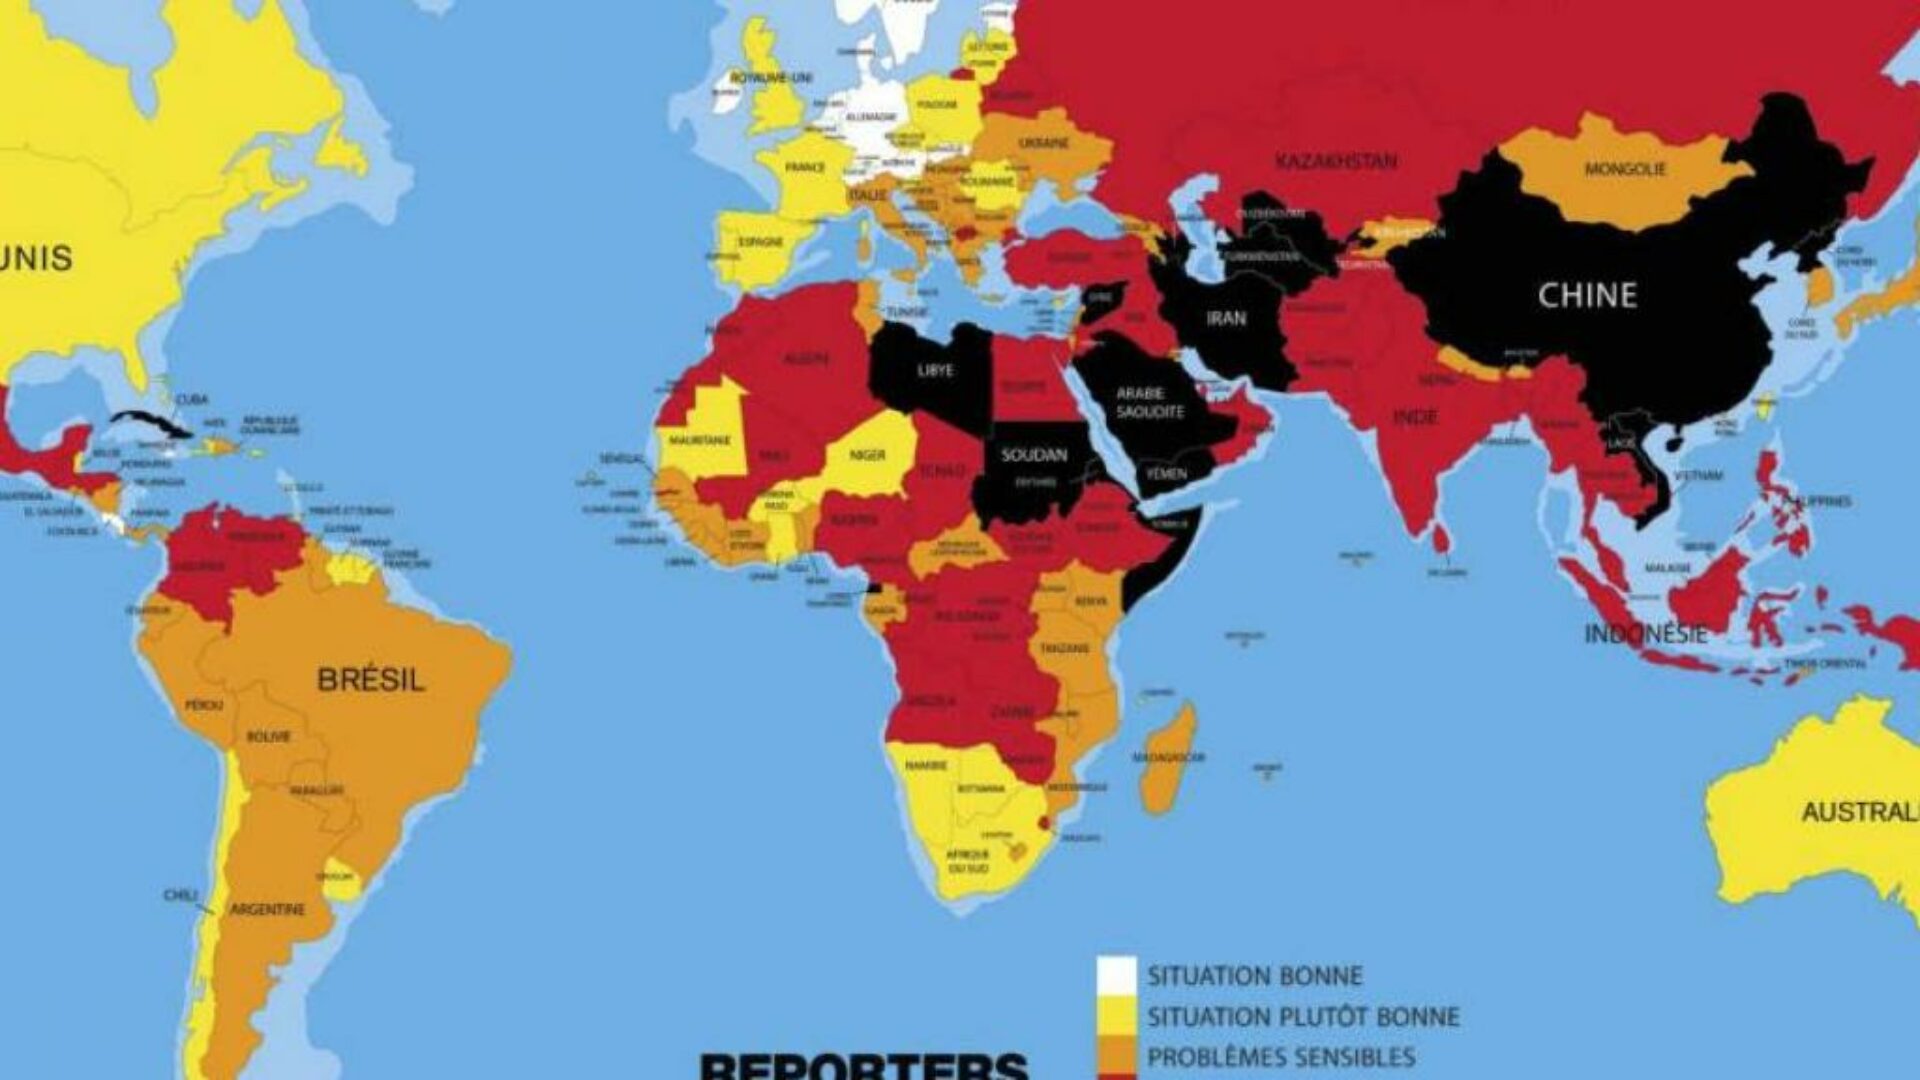 Tình hình tự do báo chí đang xấu đi trên toàn cầu